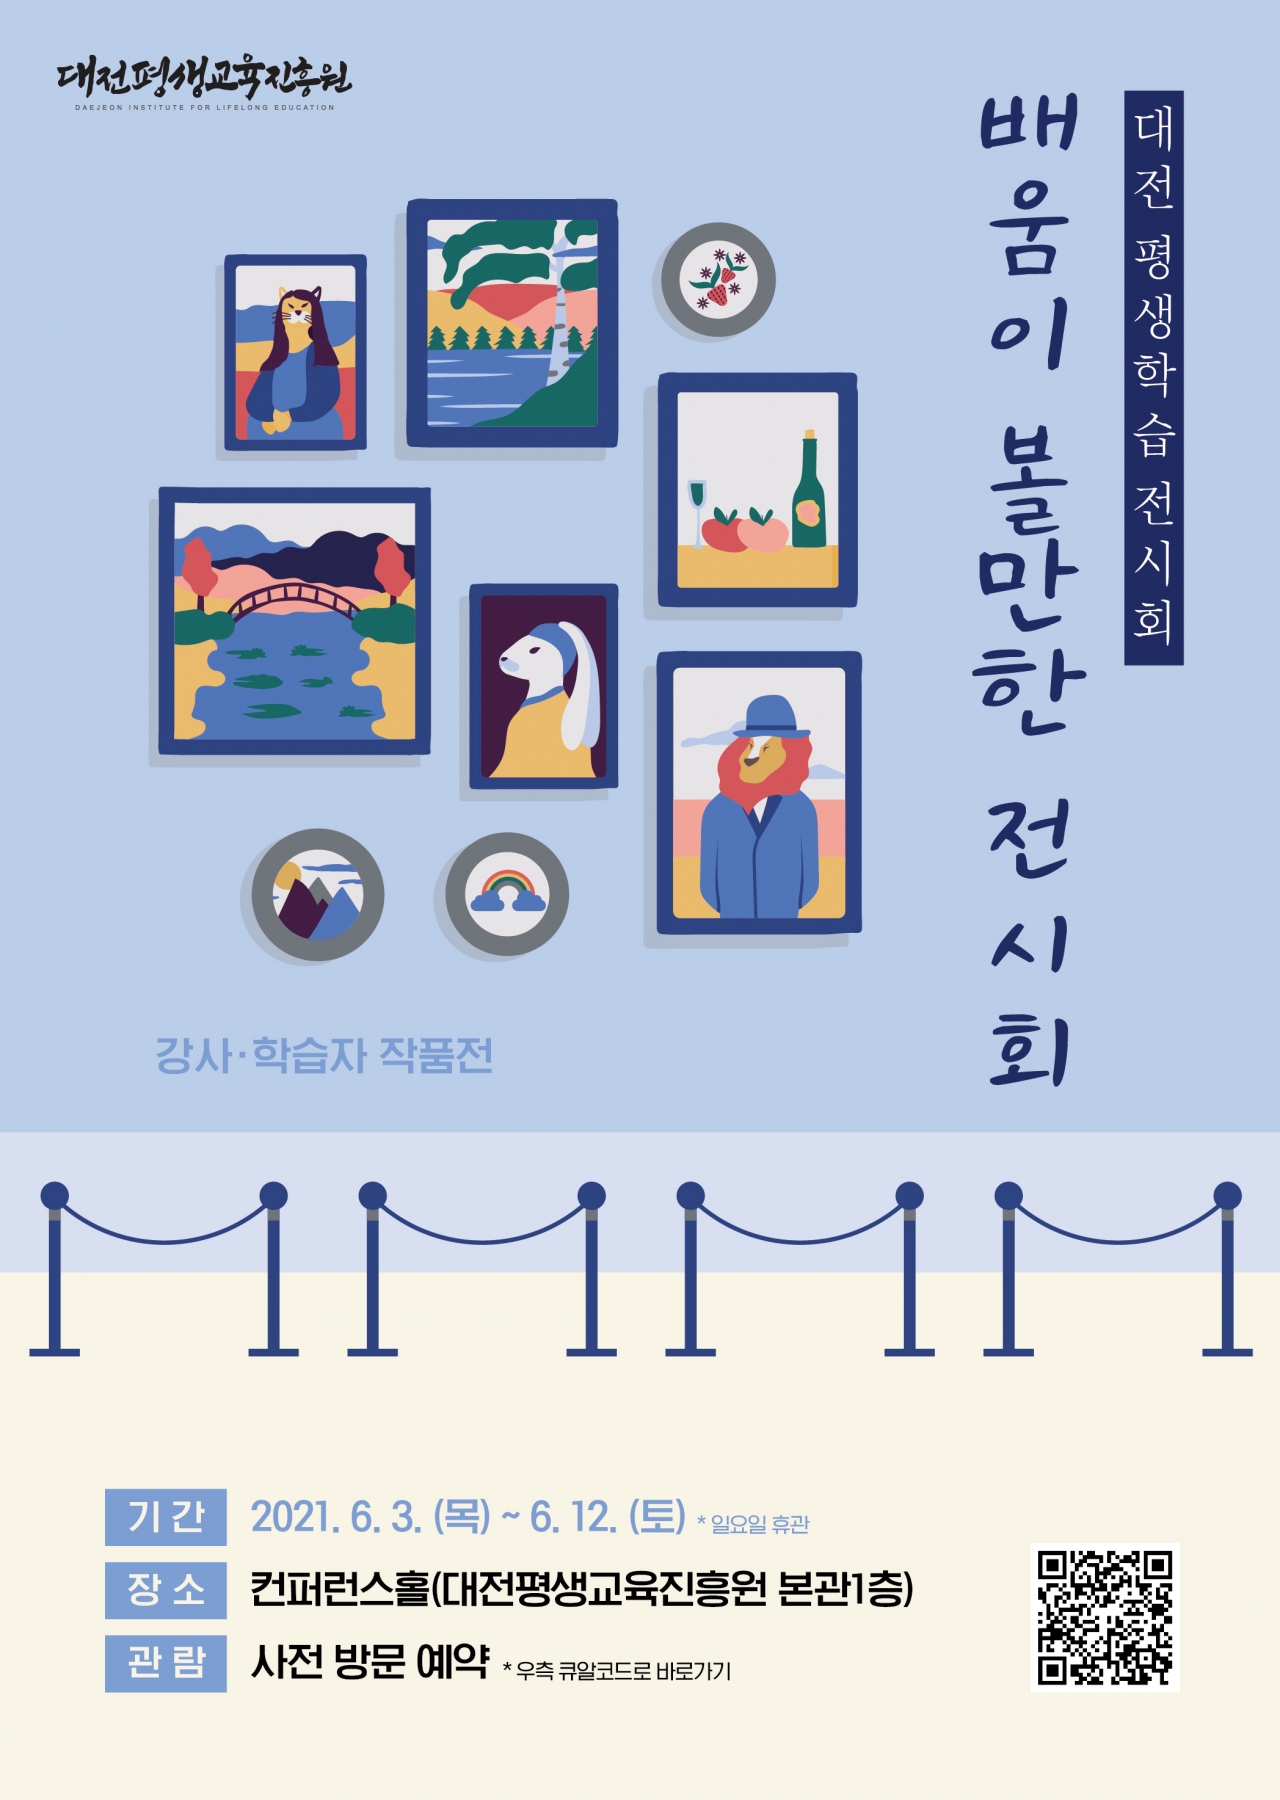 대전평생교육진흥원 ‘배움이 볼만한 전시회’ 개최 / 굿모닝충청 윤지수 기자